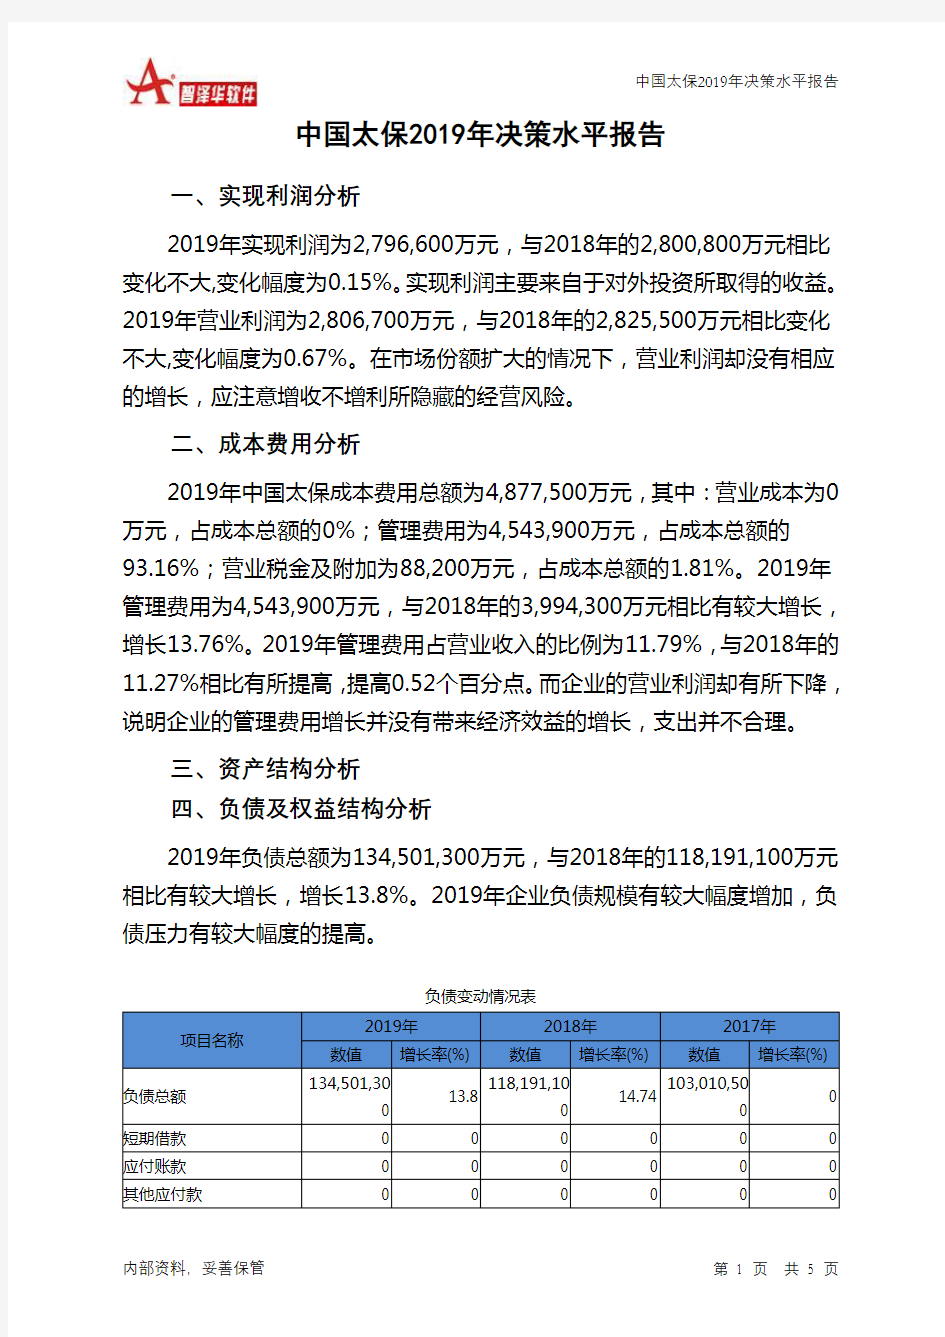 中国太保2019年决策水平分析报告